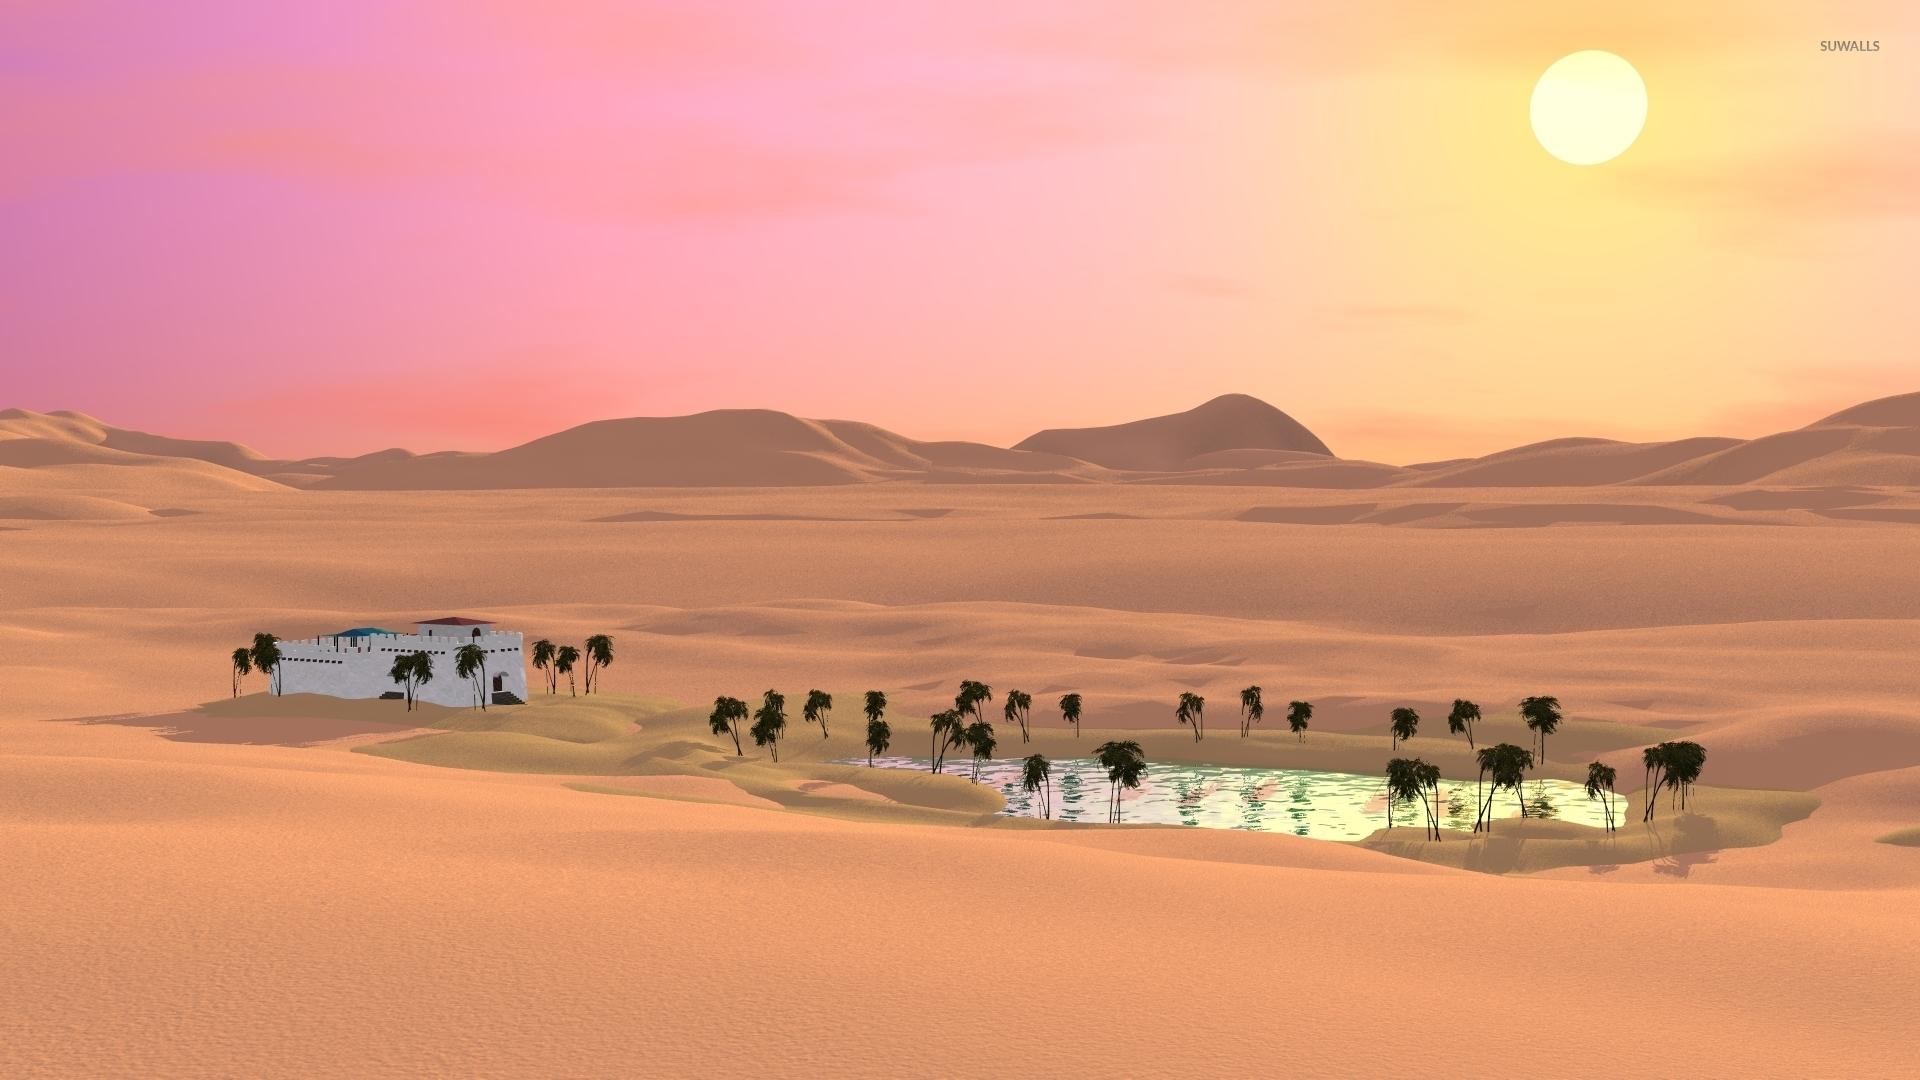 Oasis in the desert wallpaper Art wallpaper